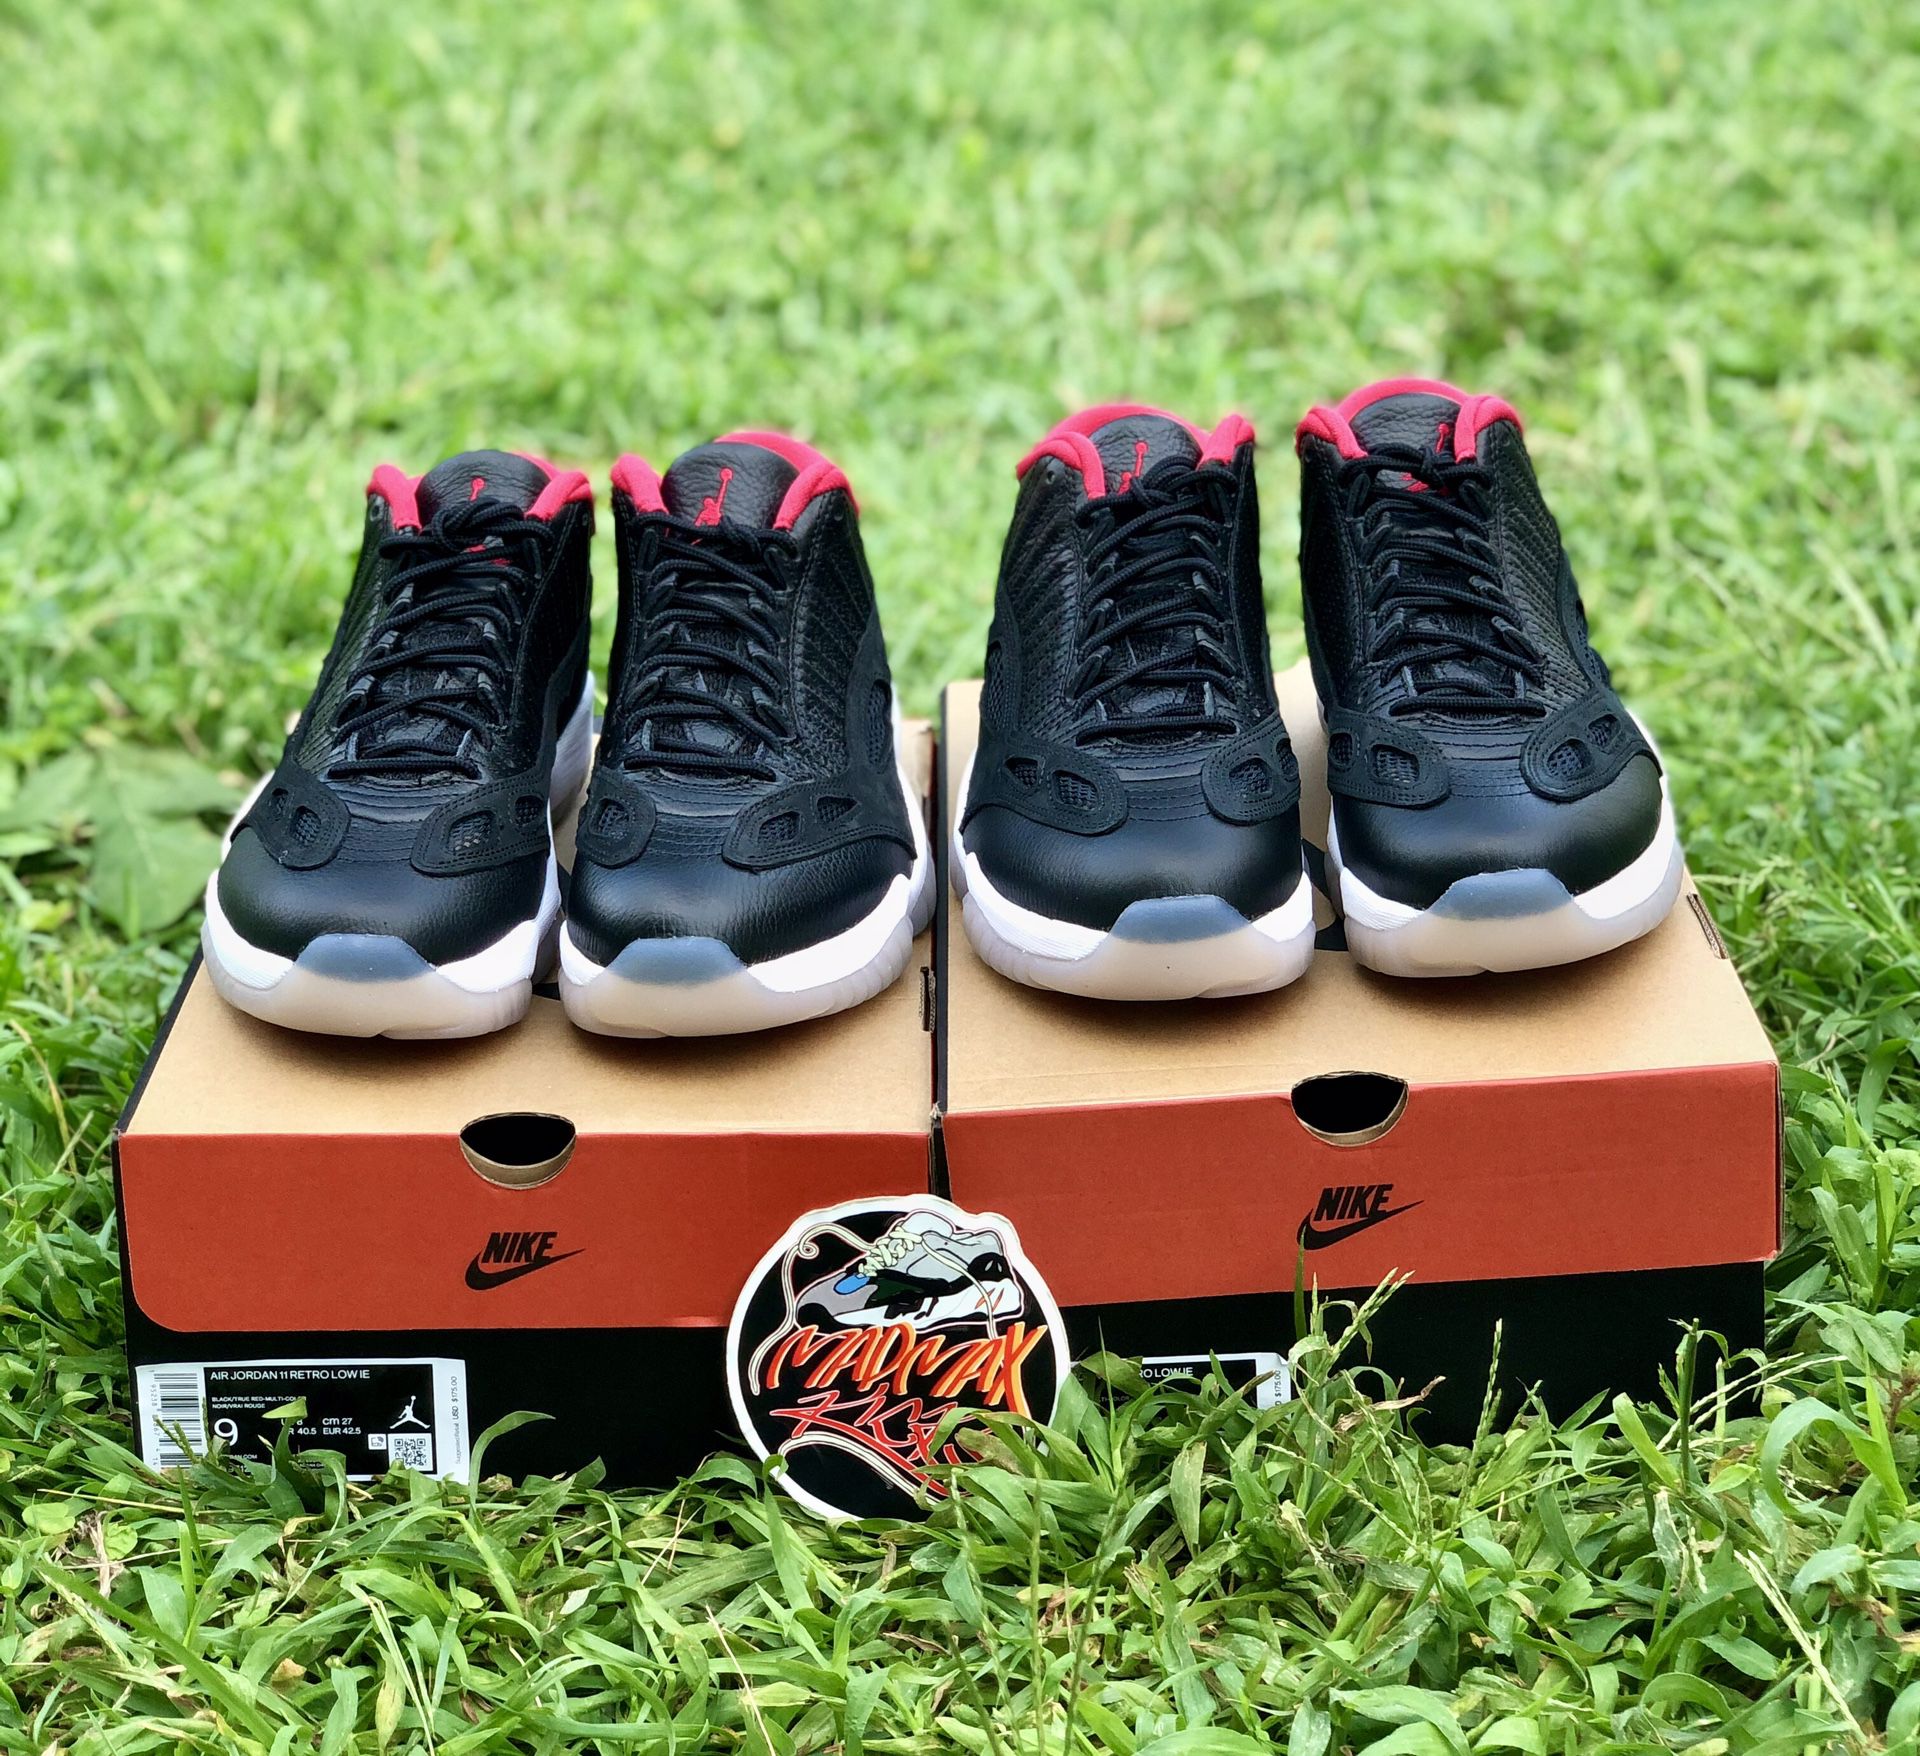 Nike Air Jordan 11 Low IE “Bred”